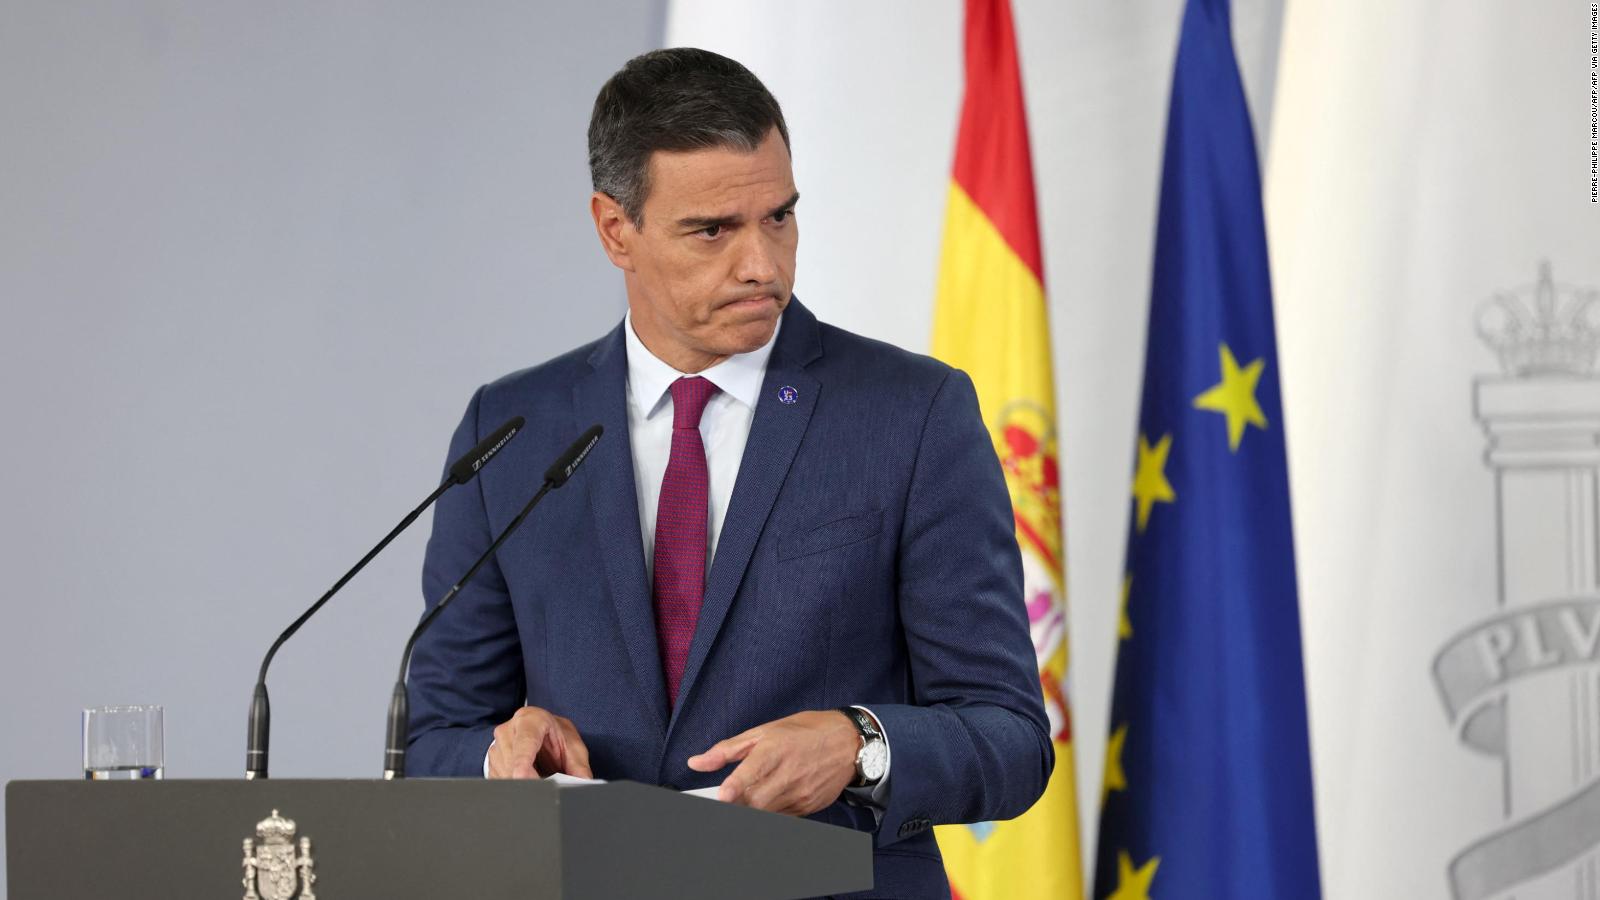 Última hora de Pedro Sánchez y su decisión, en vivo: noticias y reacciones a su posible renuncia